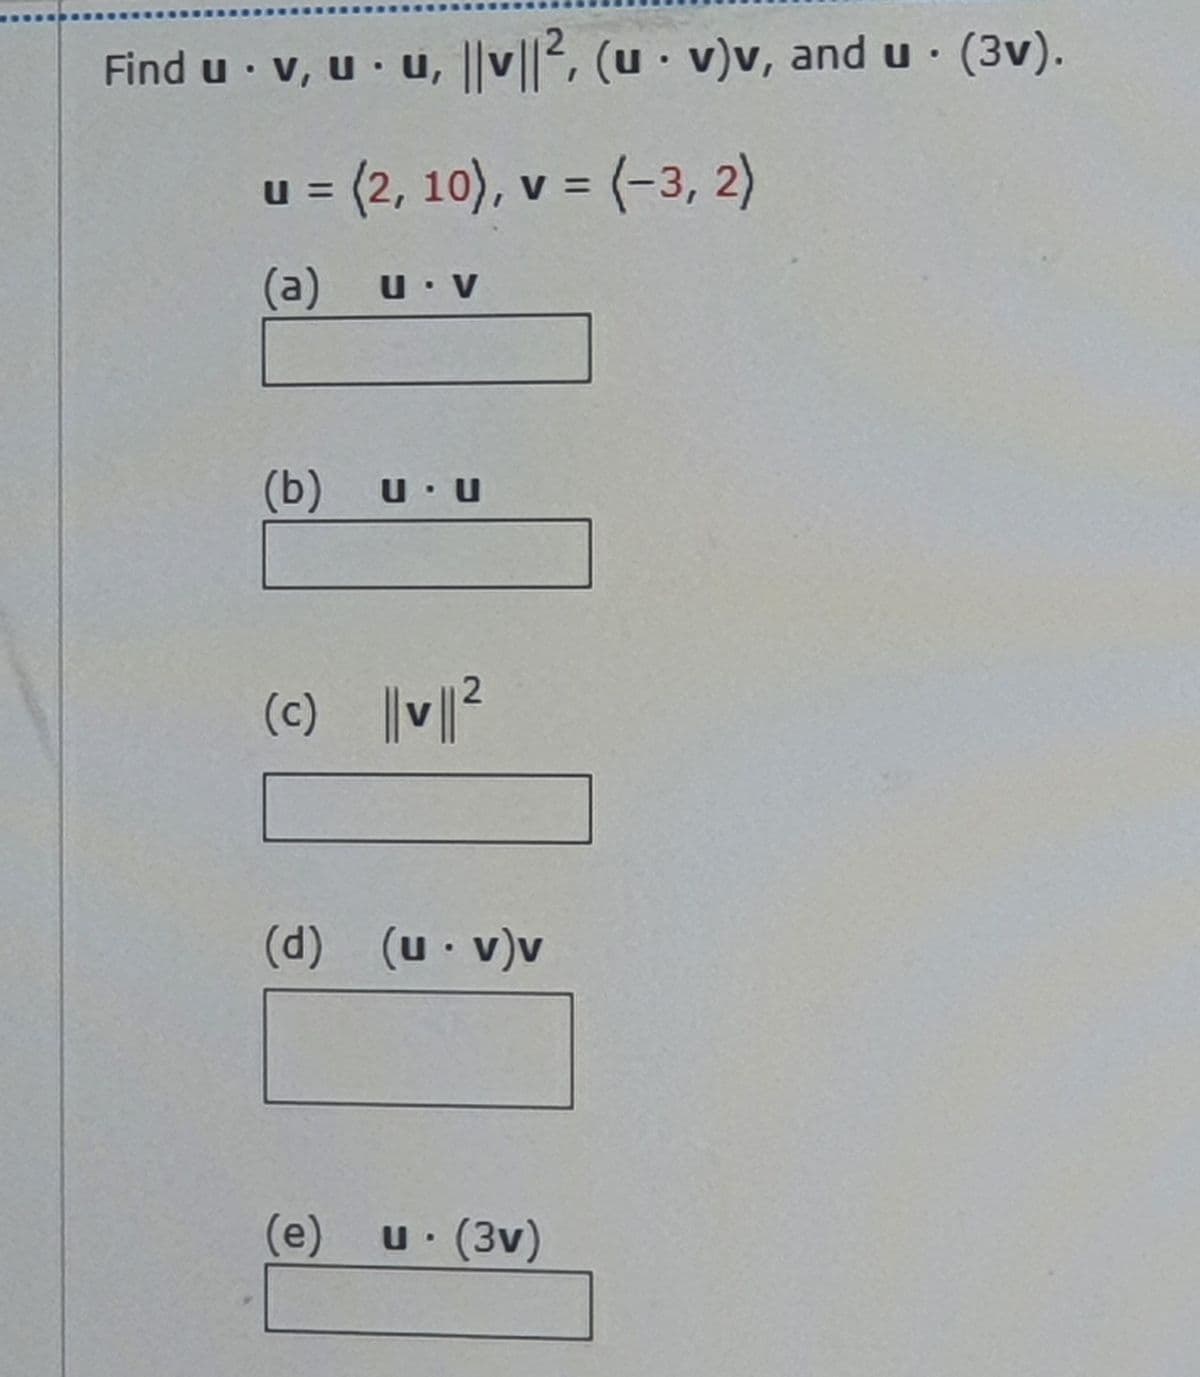 Find u · v, u · u, ||v||2, (u · v)v, and u · (3v).
u = (2, 10), v = (-3, 2)
(a) u v
(b)
U U
(c) V²
(d)
(u v)v
(e) u (3v)
